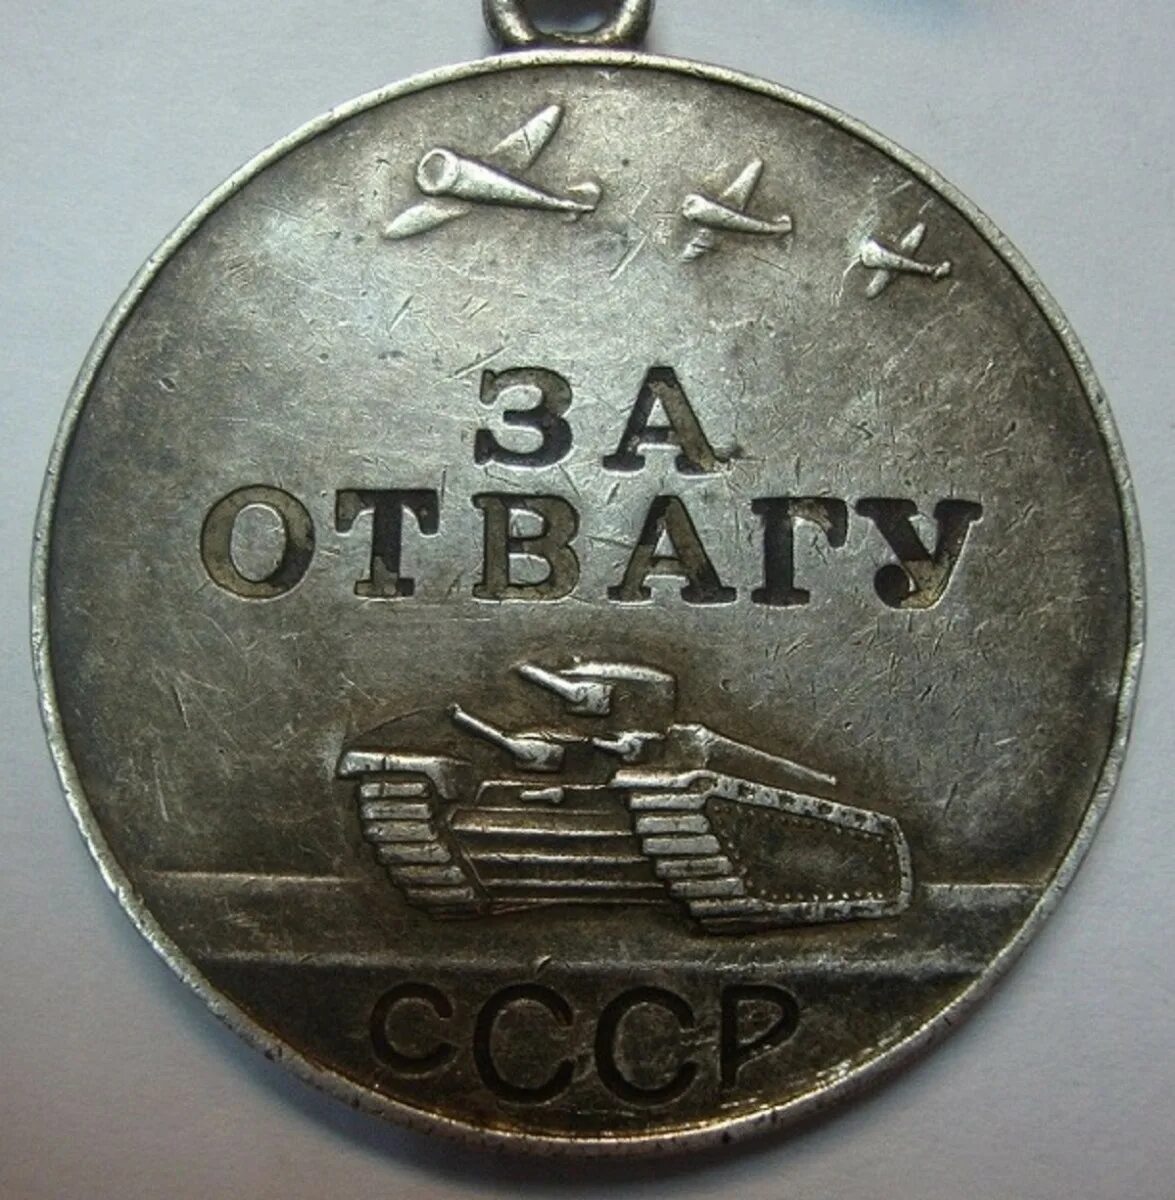 За отвагу что положено. Медаль за отвагу Великой Отечественной войны. Медаль за отвагу 1941. Медаль за отвагу 1943 г. Медаль за отвагу 1945г.